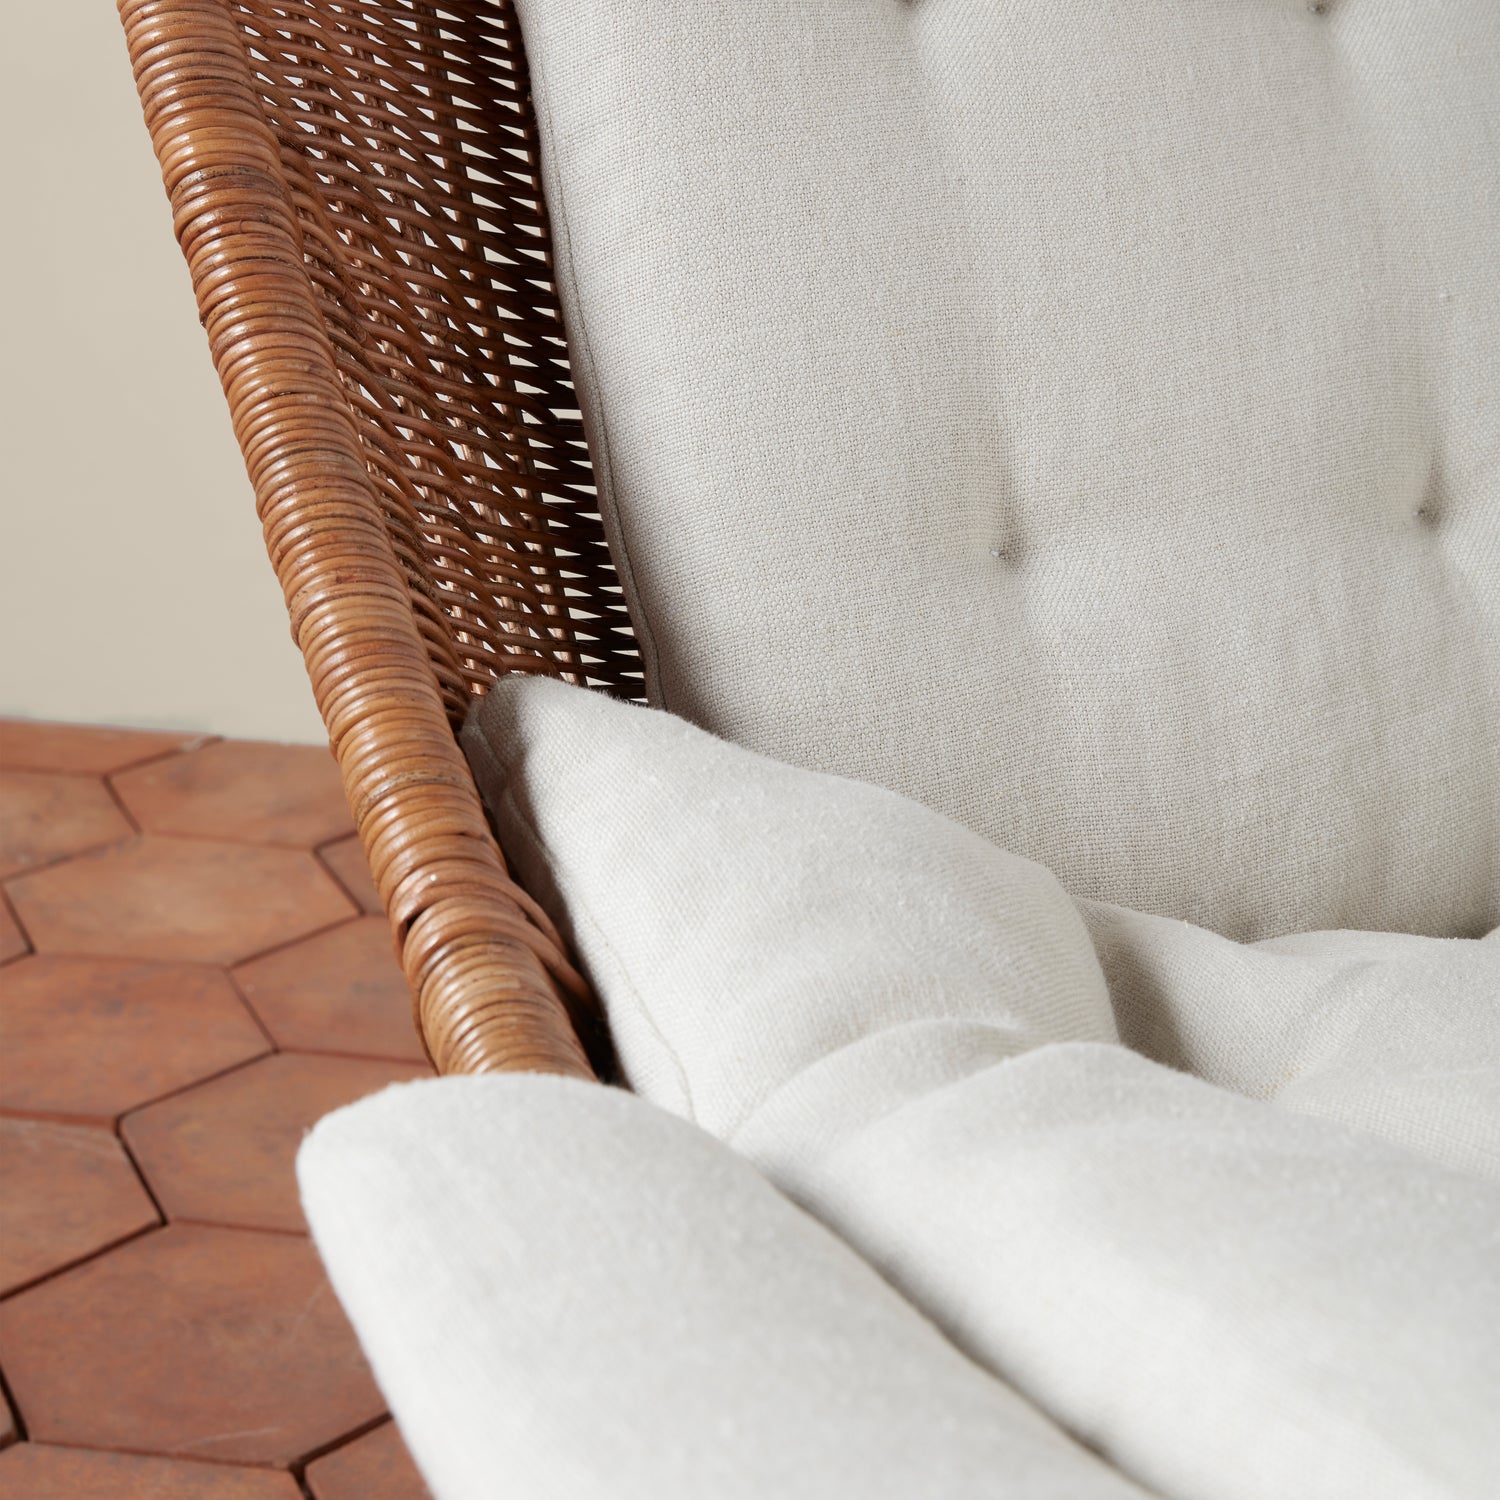 healdsburg wicker swivel chair with cushion detail